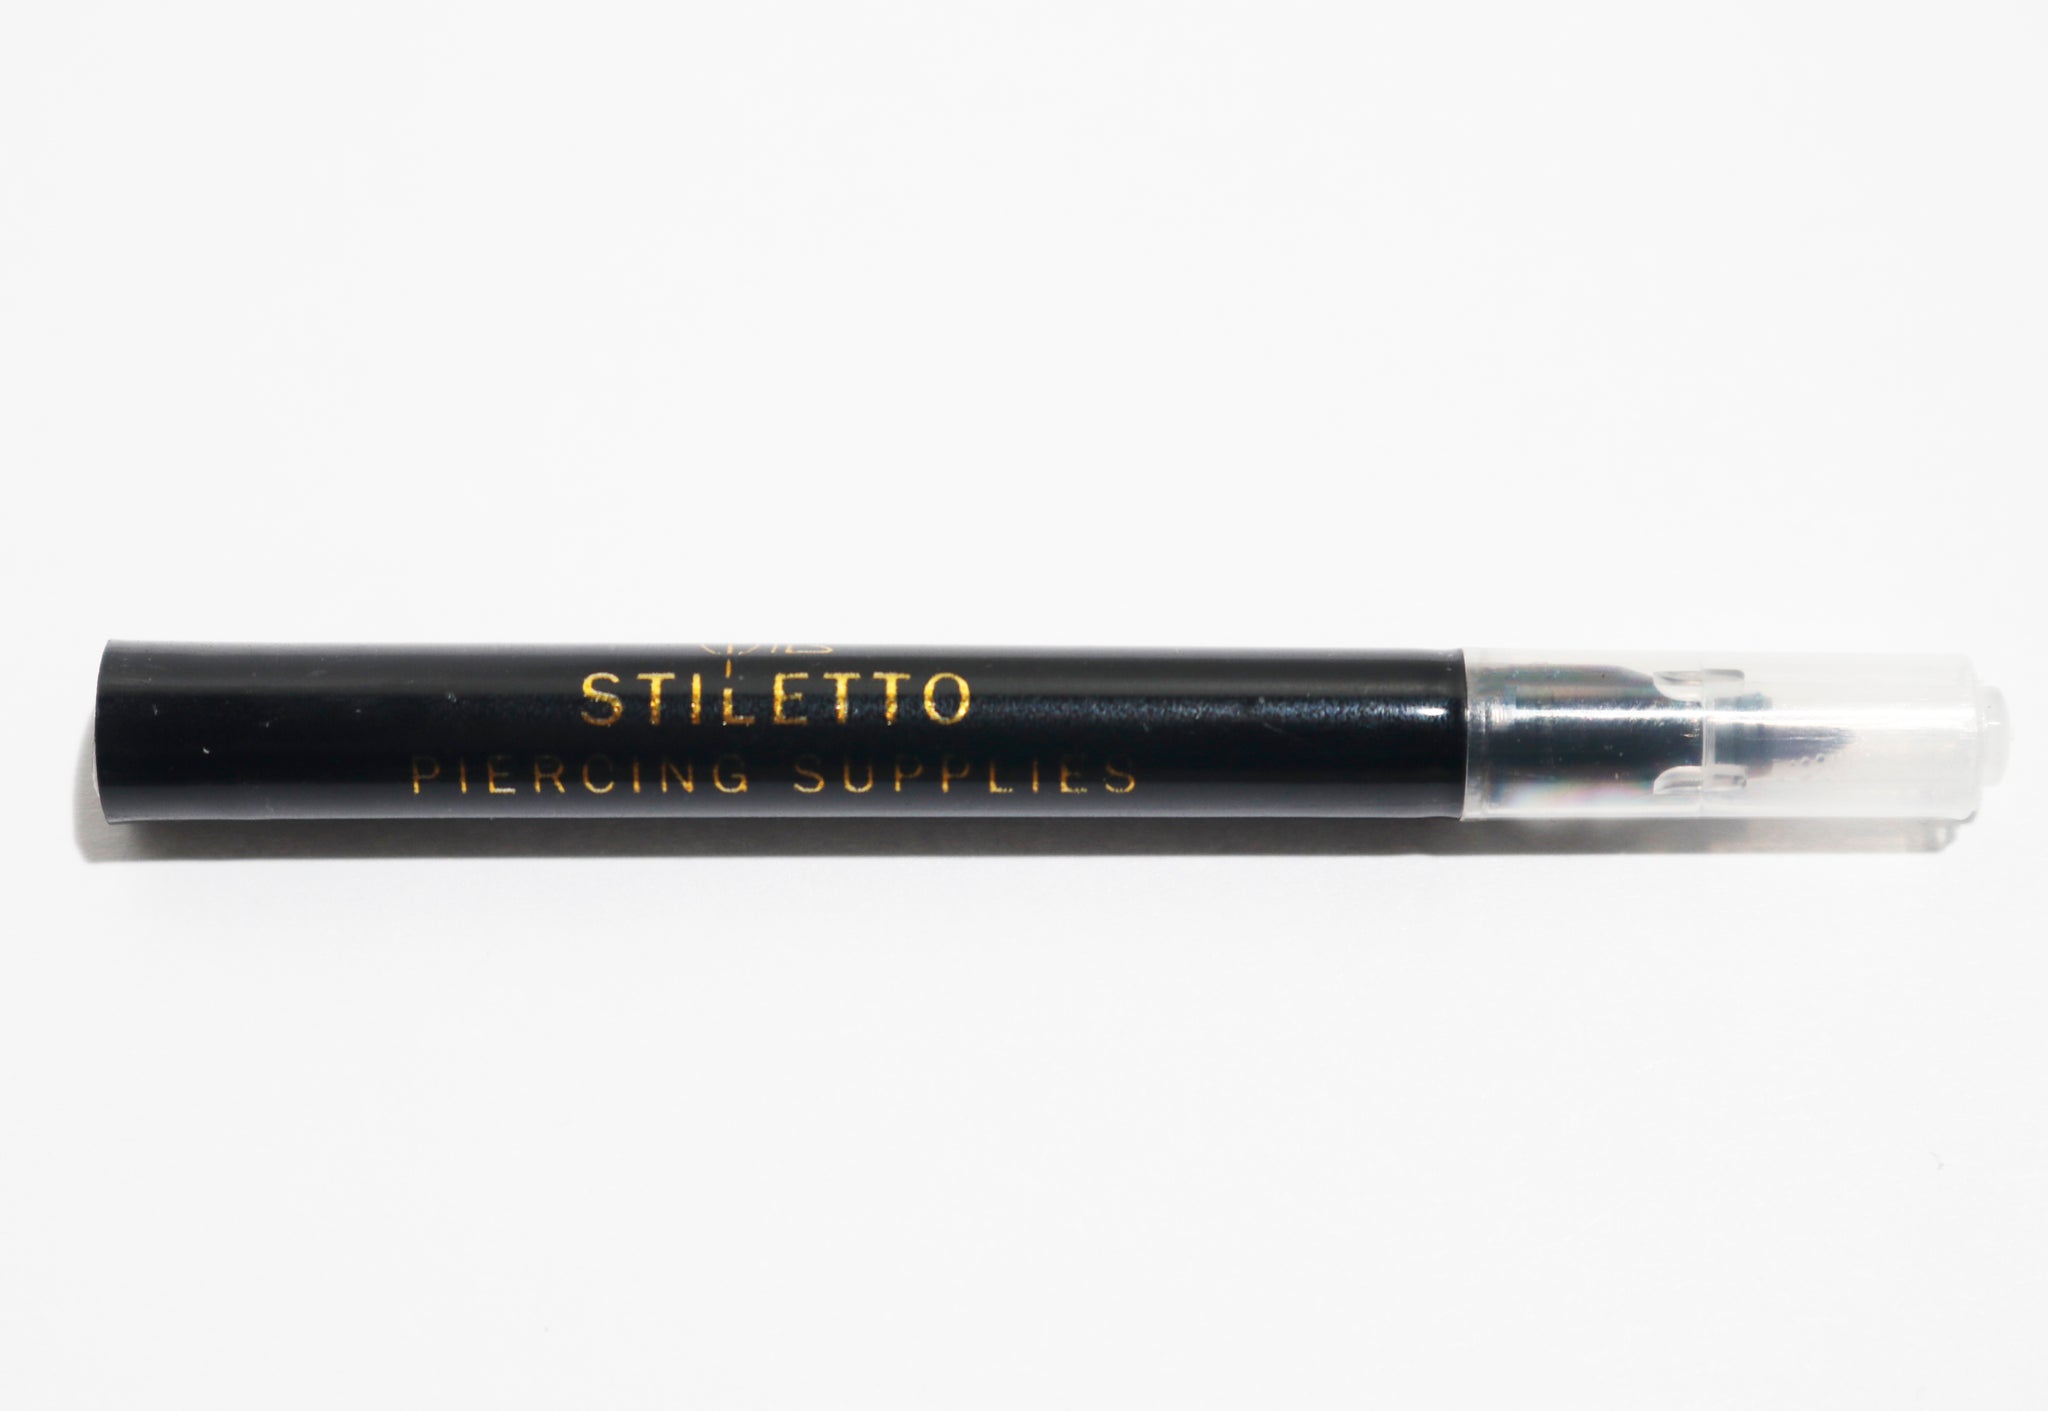 Stiletto Skin Marker – Stiletto Piercing Supply Inc.